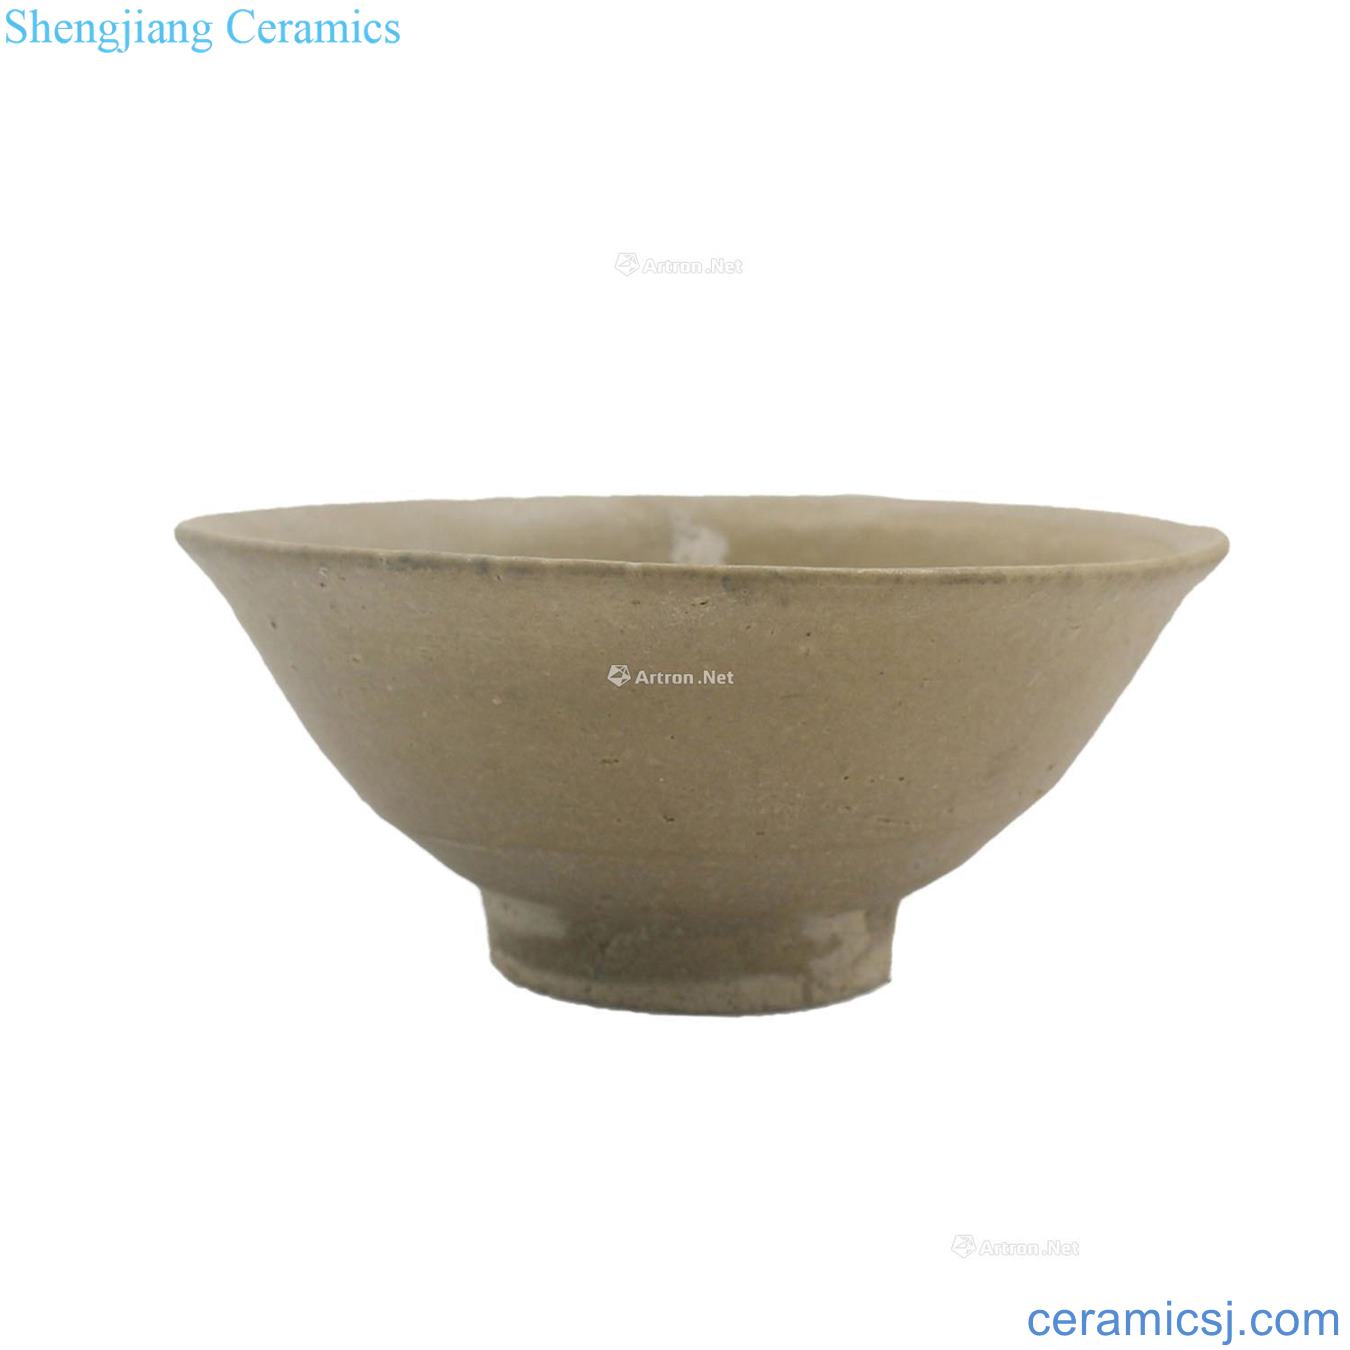 The song dynasty porcelain white glazed bowl